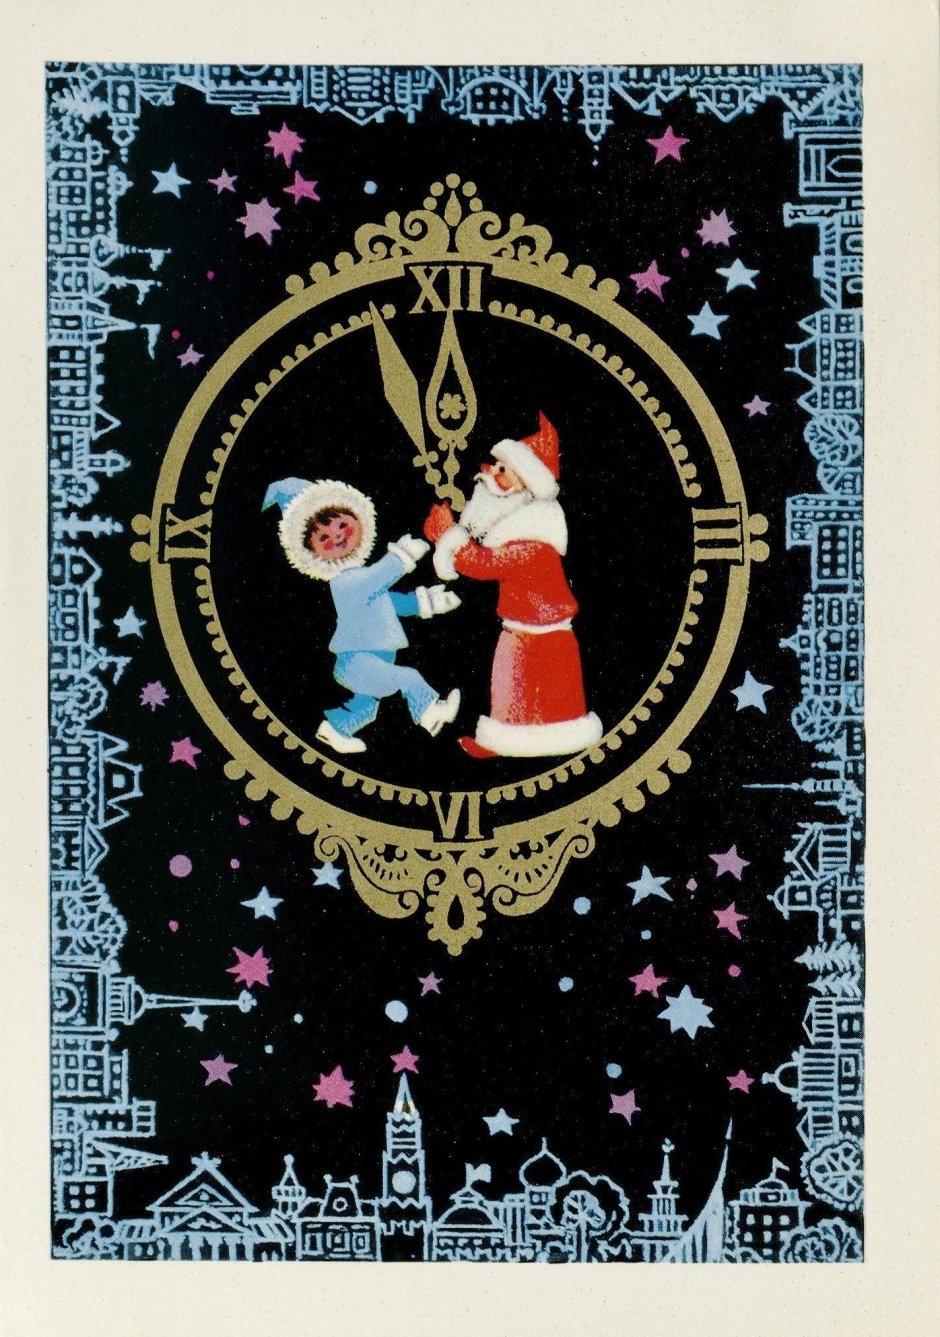 Редкие советские новогодние открытки